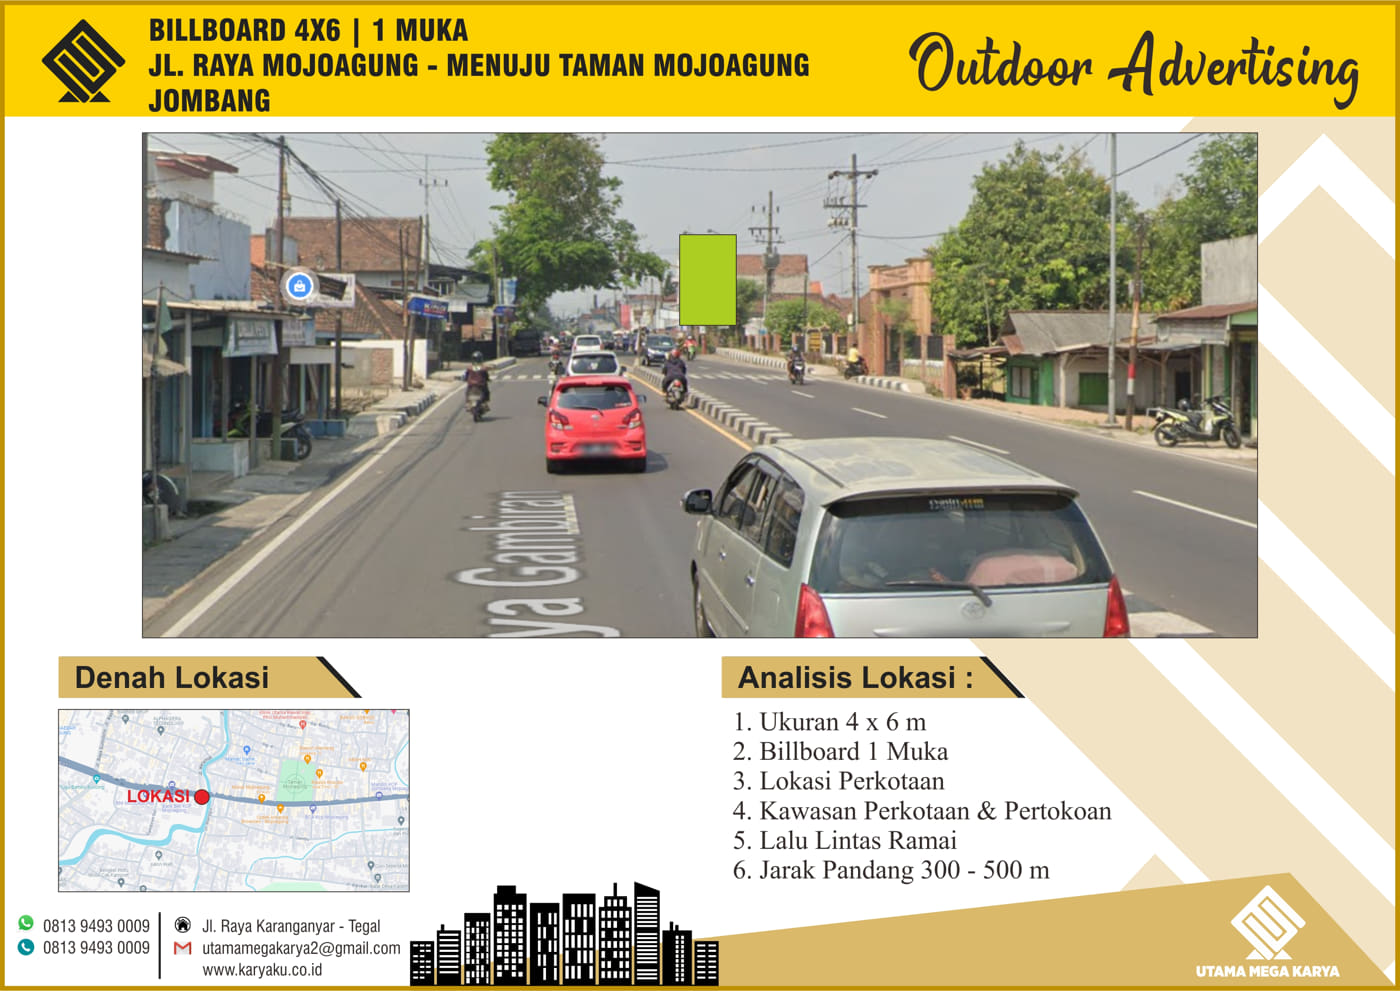 Sewa Titik Billboard di Jombang, Jl. Raya Mojoagung - Taman Mojoagung, Jombang